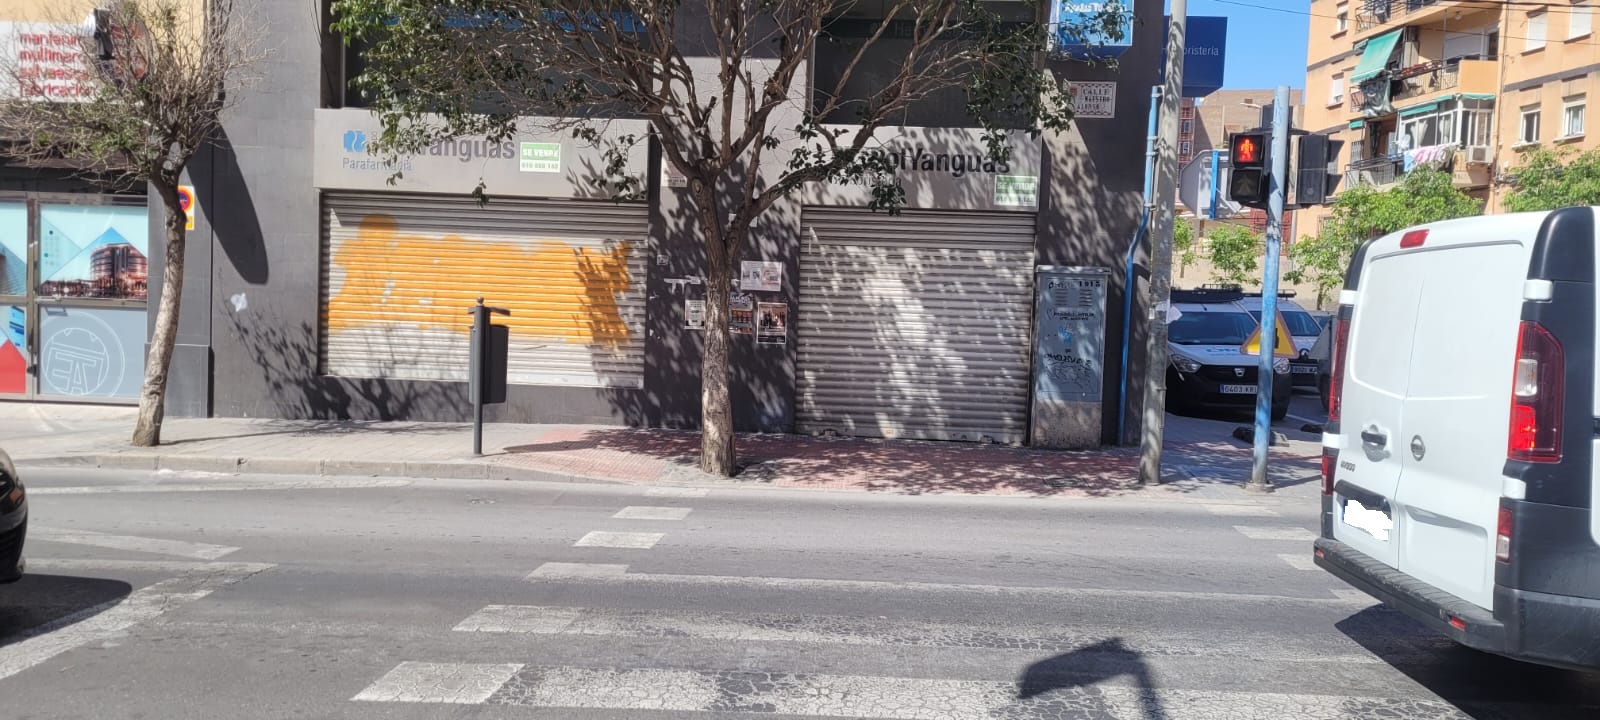 LOTE 2 de 2 Locales  Comerciales en Planta Baja en Calle Aaiun,1 y Calle Aaiun,3 en Alicante (Alicante)